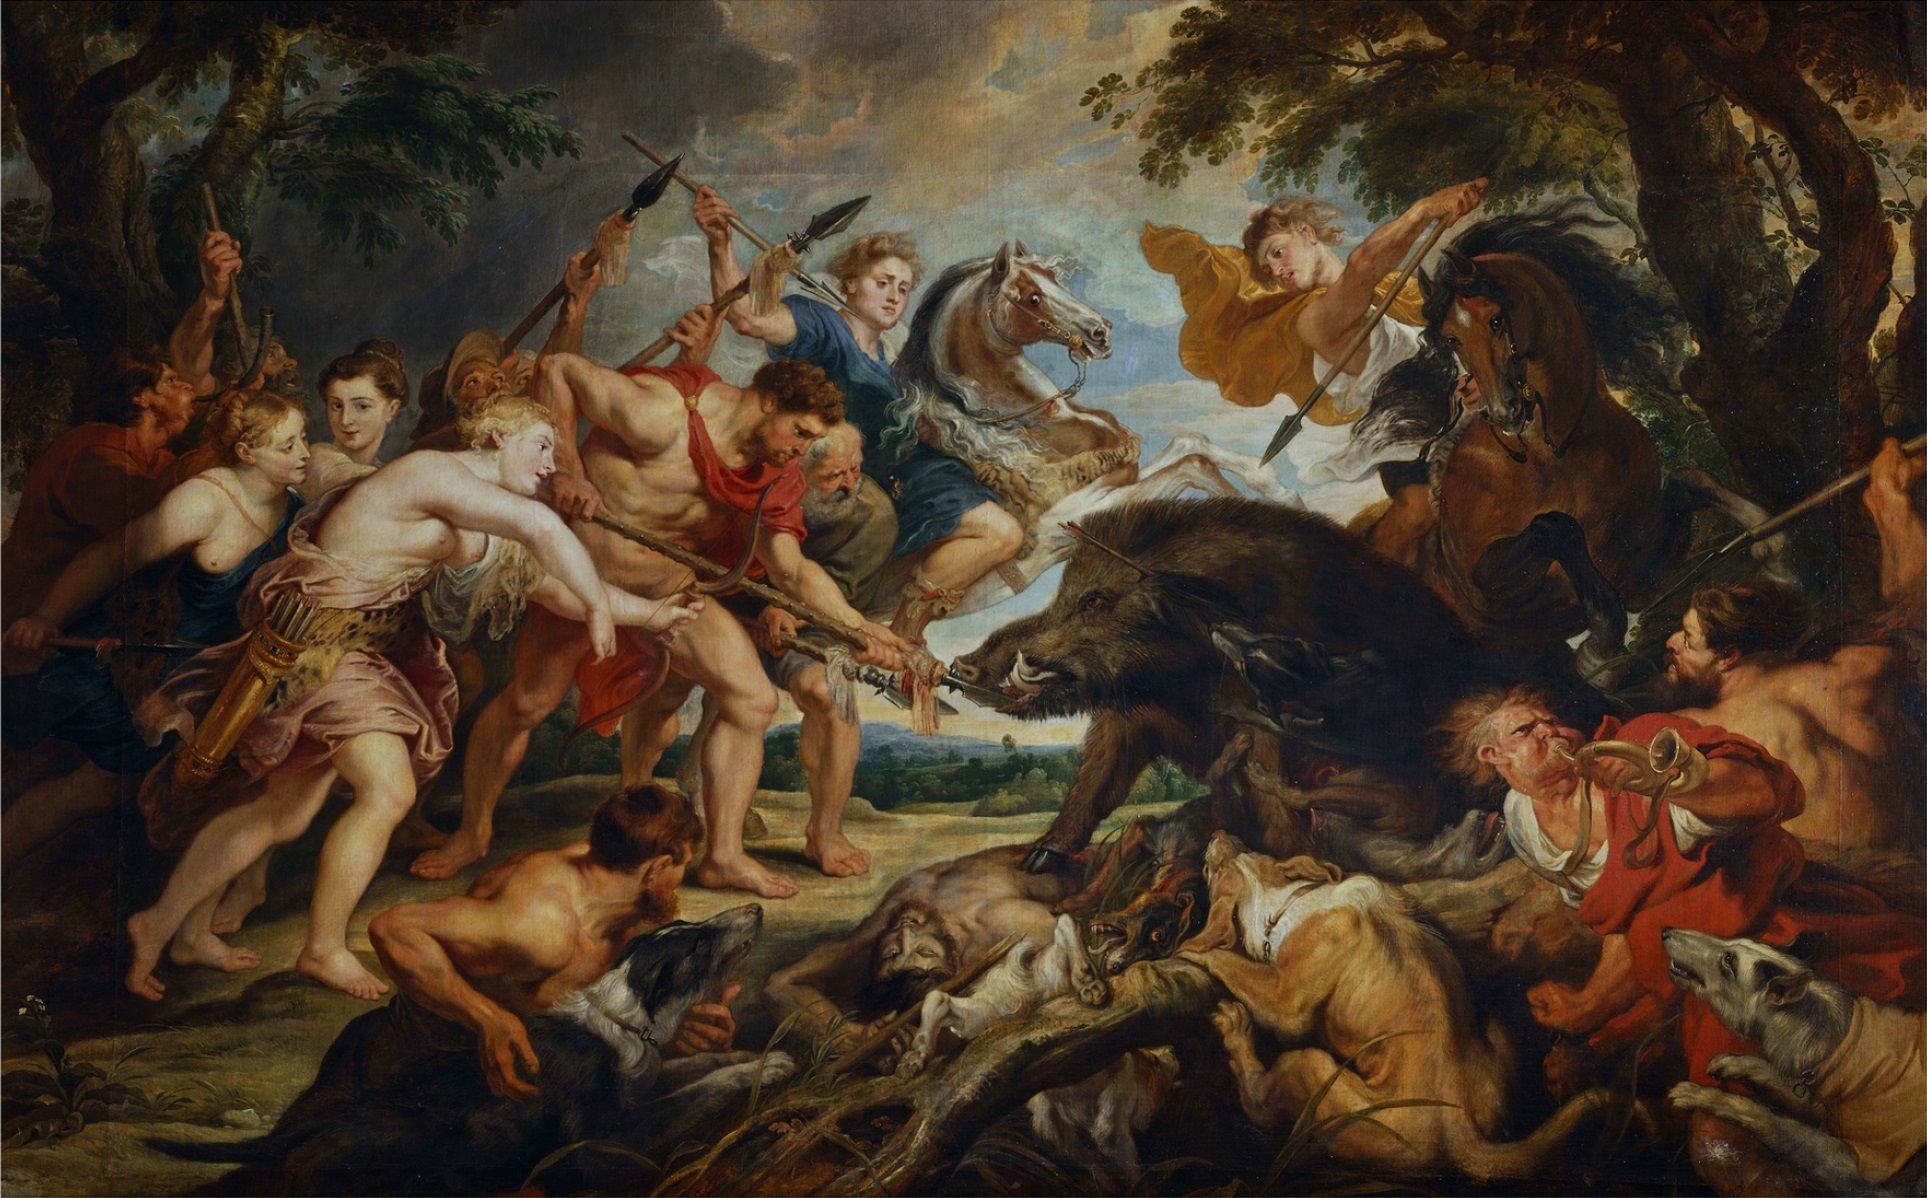 Atalanta y Meleagro junto con los otros cazadores, matando al jabalí de Caledonia, se ha tomado este mito como un simbolo del poder que las mujeres tienen para realizar actividades ligadas a los hombres de manera histórica. Pintura de Peter Paul Rubens.